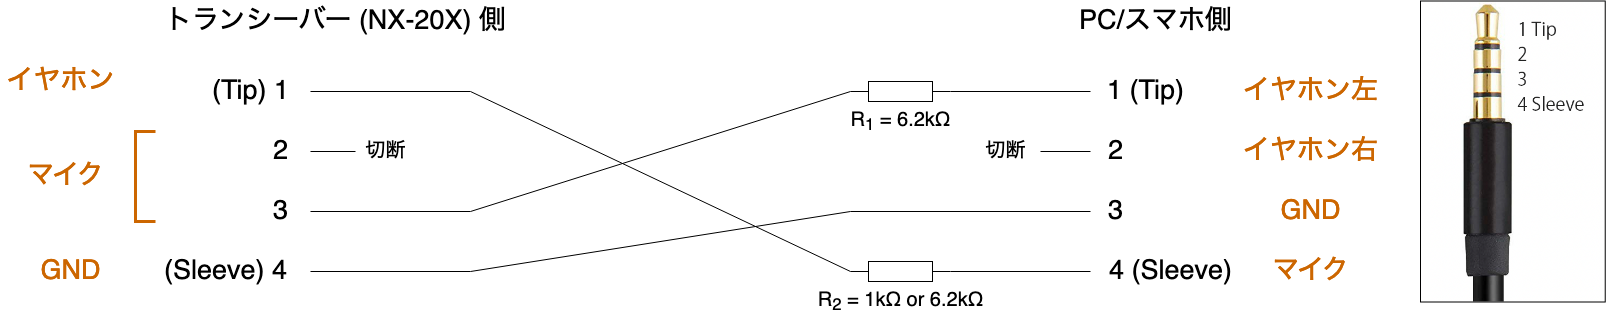 図1. 作成した変換ケーブルの回路図